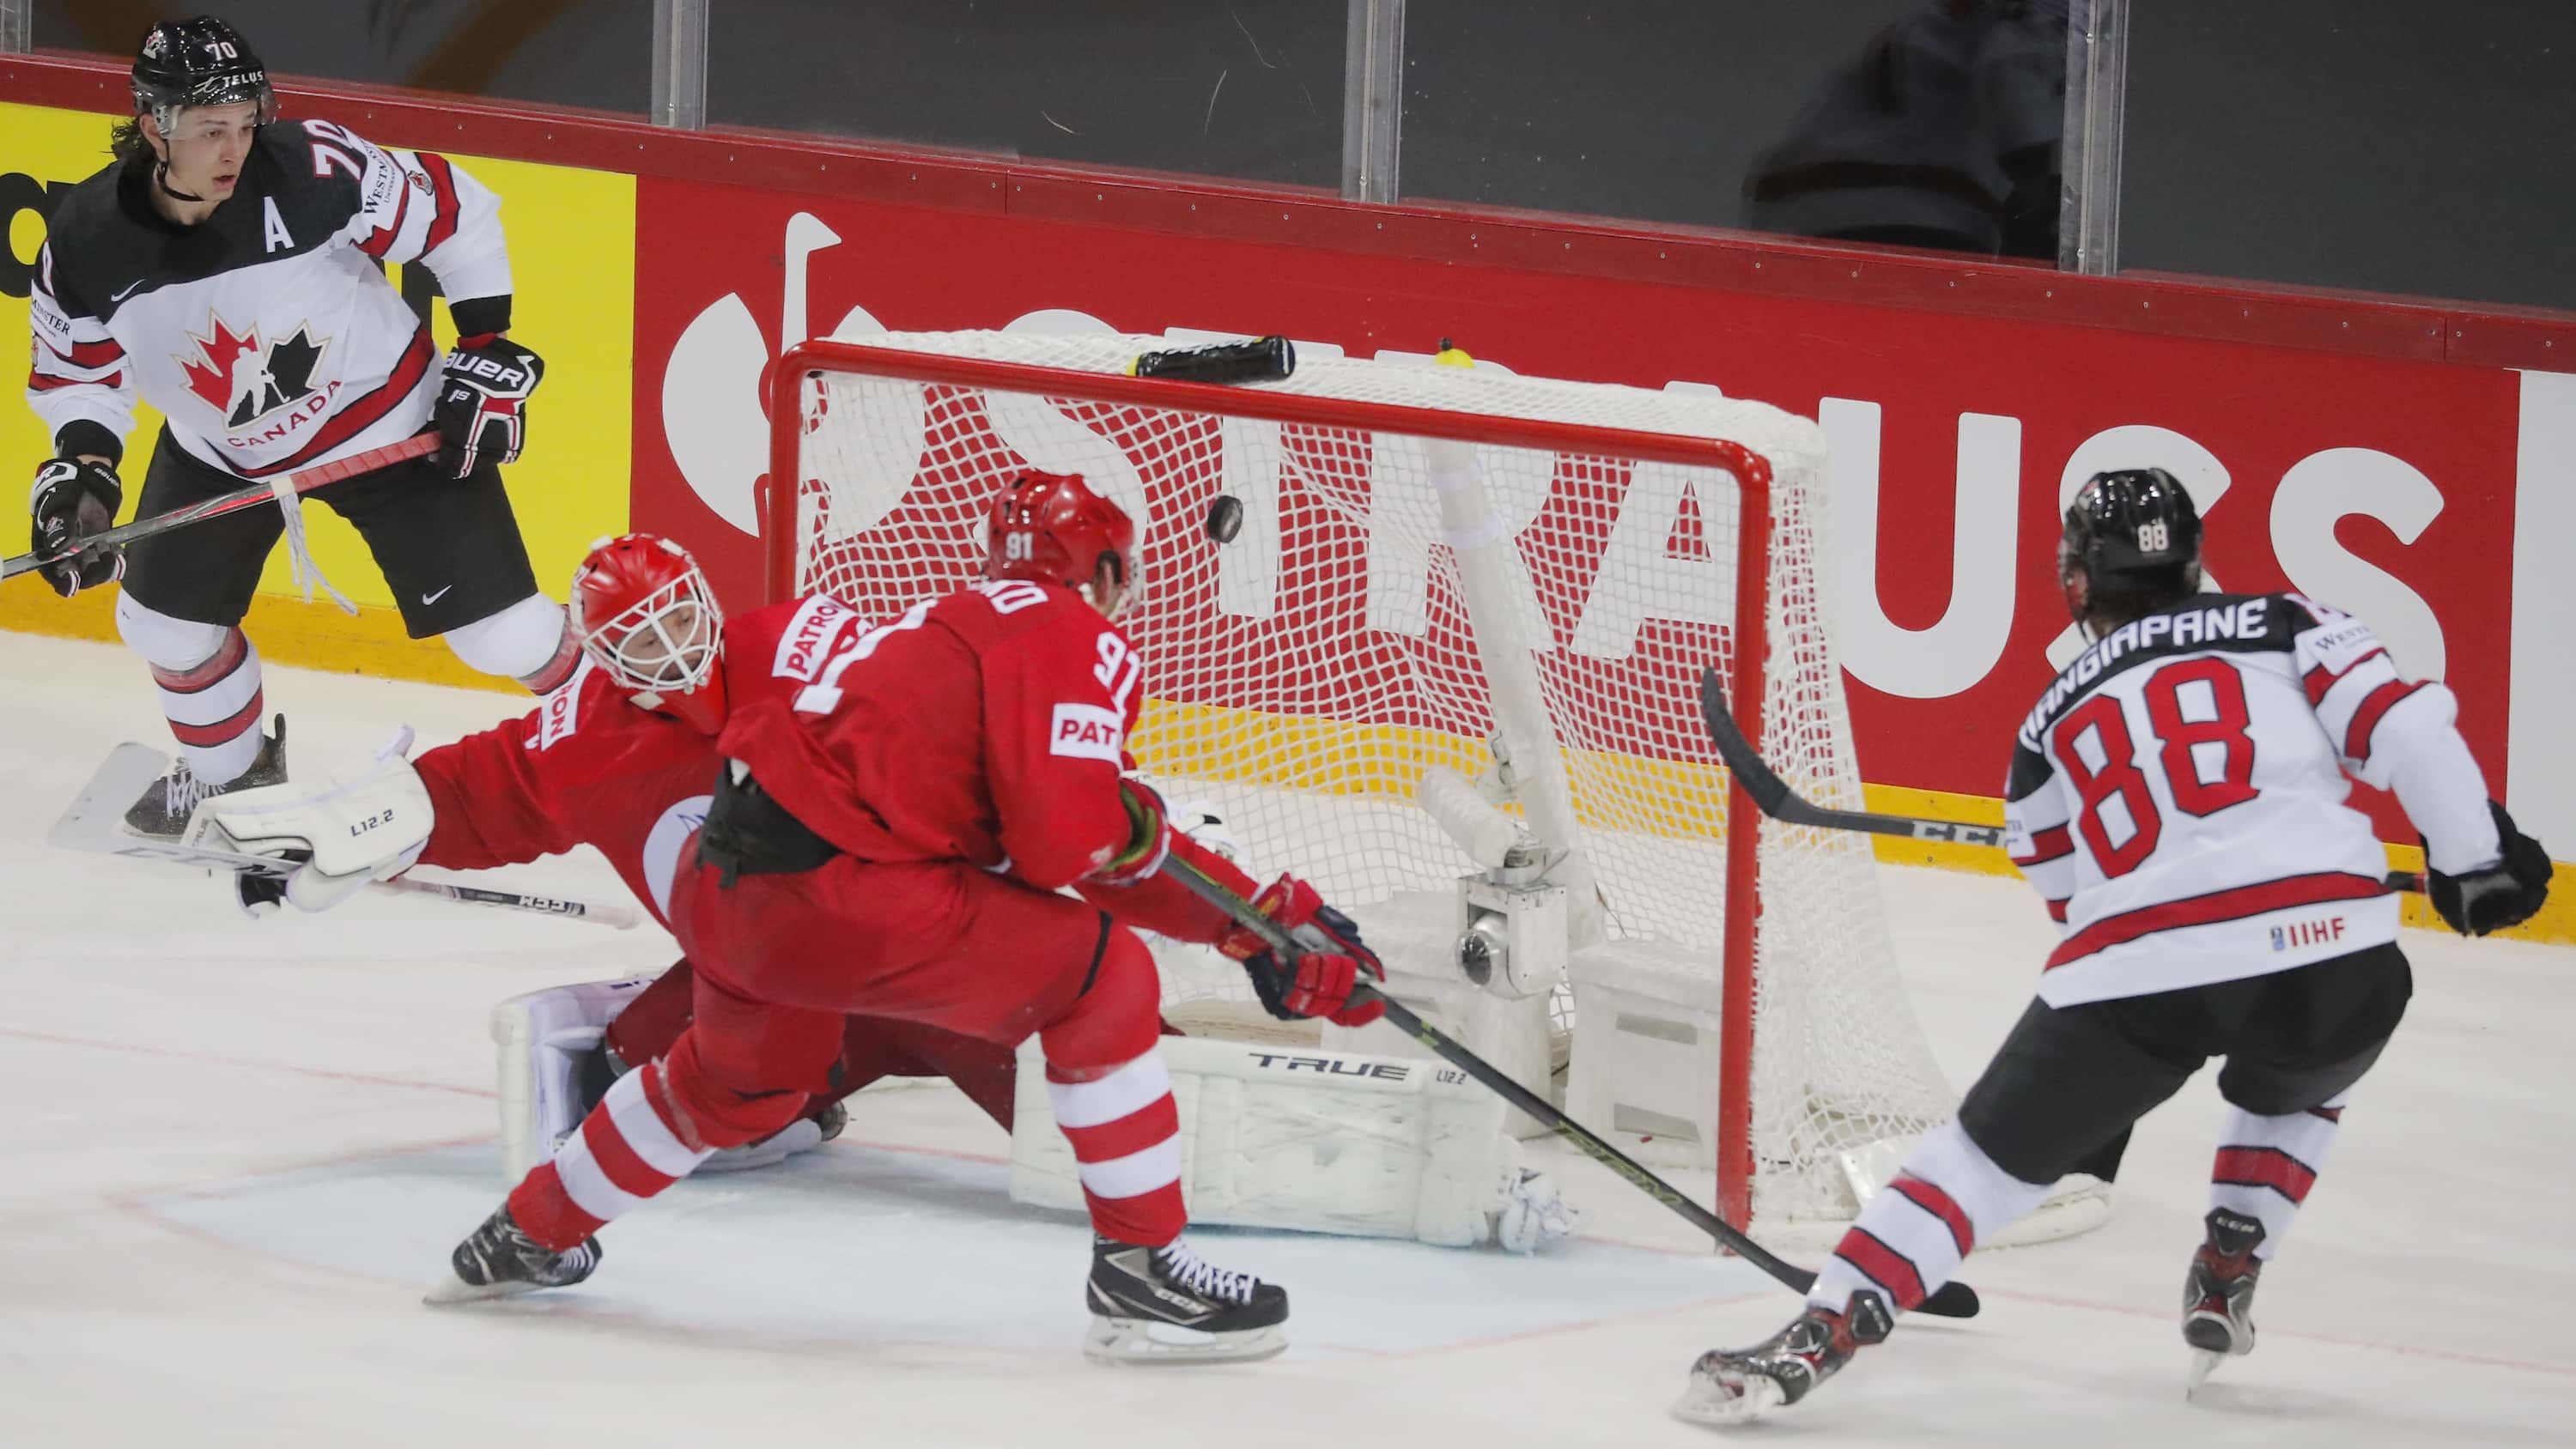 Россия вылетела от слабой Канады на чемпионате мира по хоккею. Команде не помогли даже звезды из НХЛ